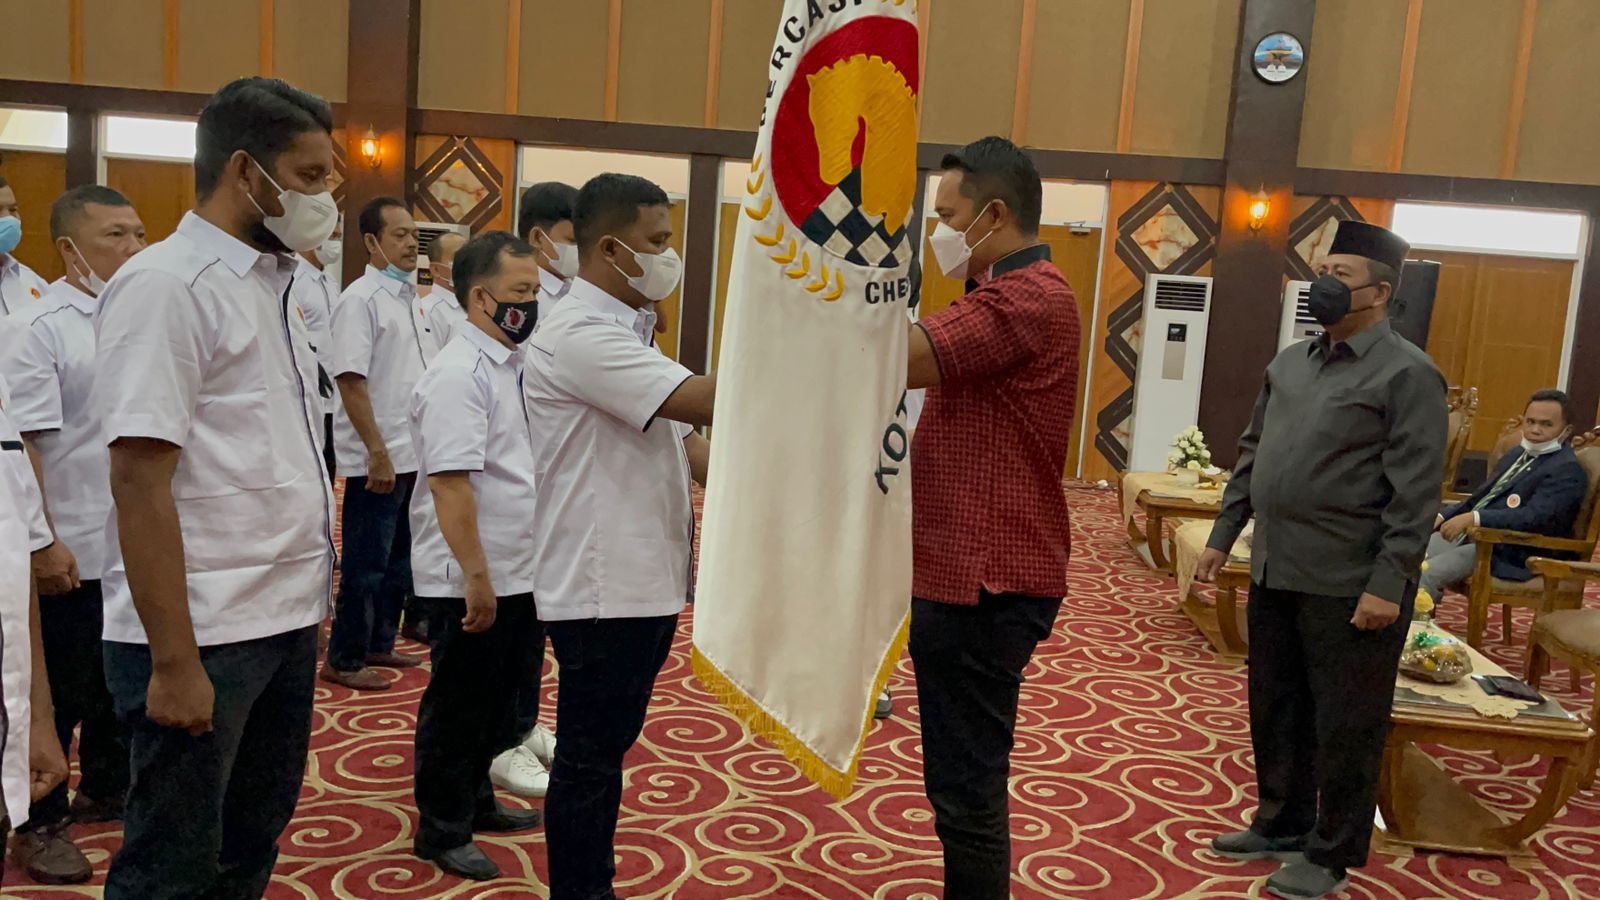 Dilantik Jadi Ketua Percasi Riau Periode 2021-2025, M Yasir: Â Siap Membumikan Catur di Kota Madani